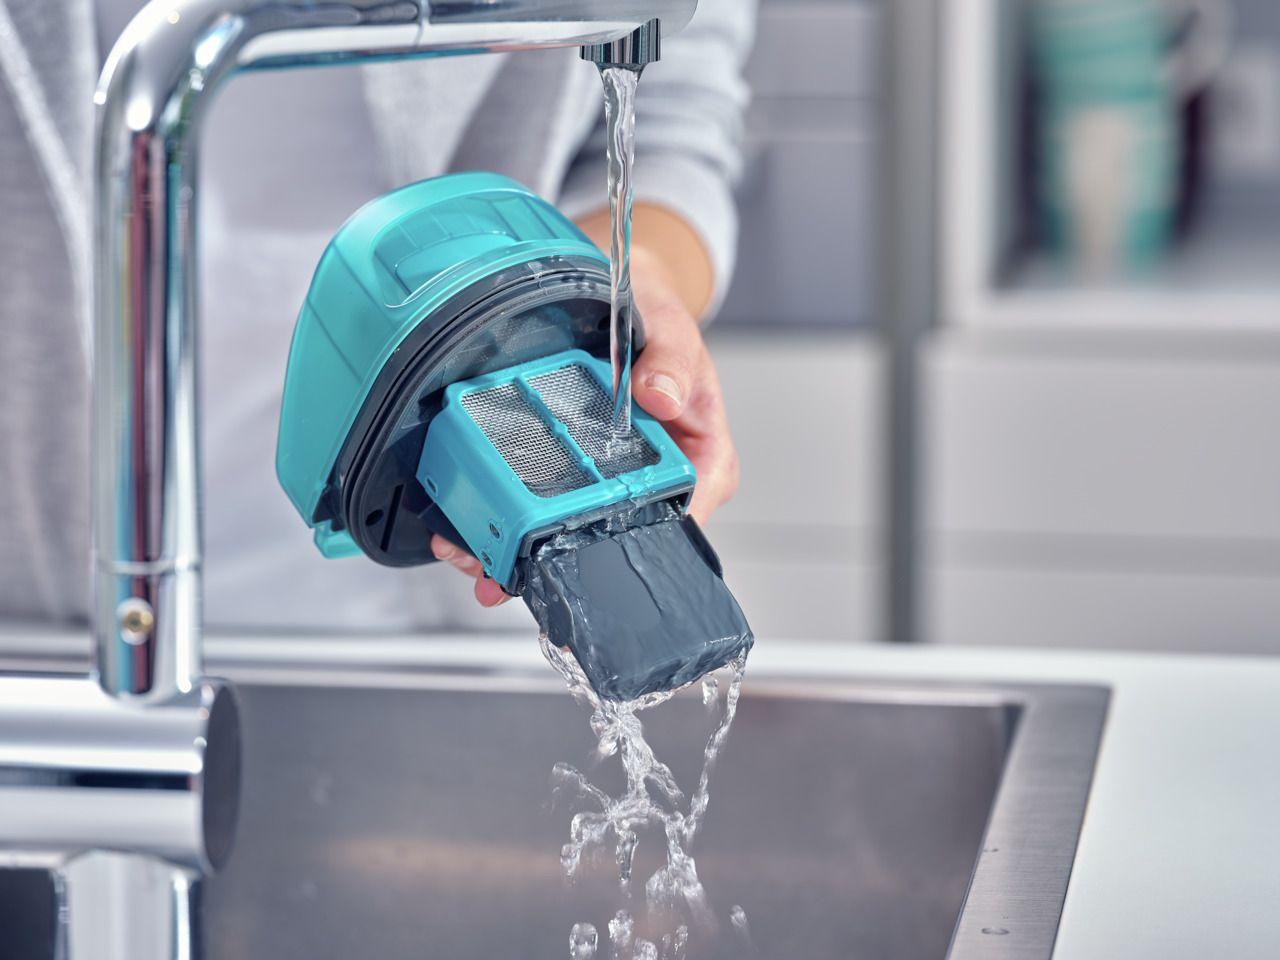 Bezprzewodowy odkurzacz myjący Regulus AquaPowerVac Leifheit